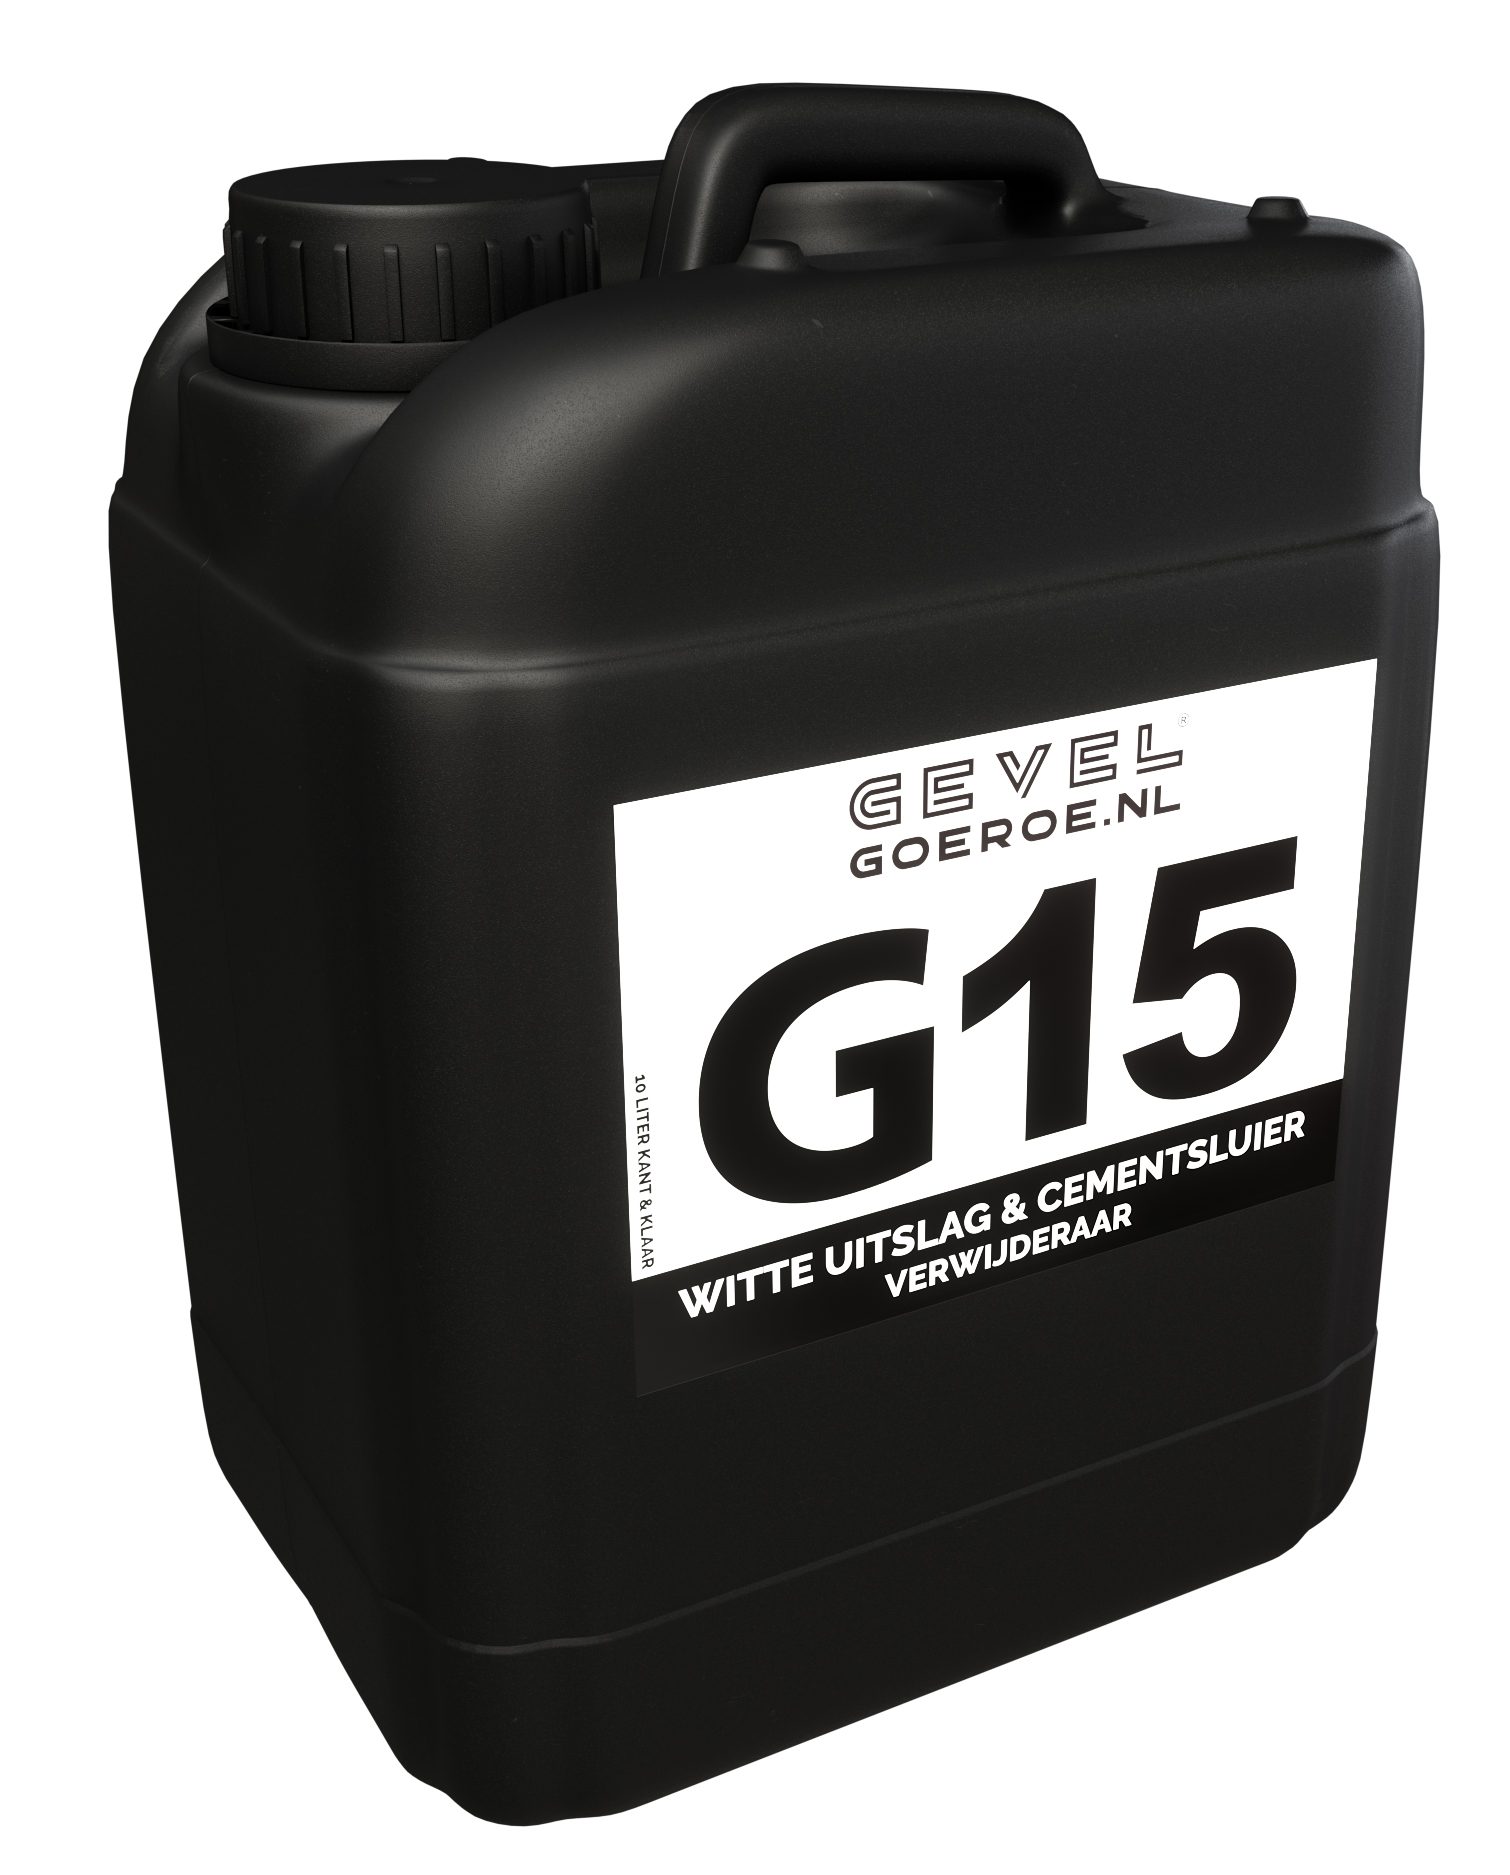 G15 Kalk- & Cementsluier Verwijderaar 10L